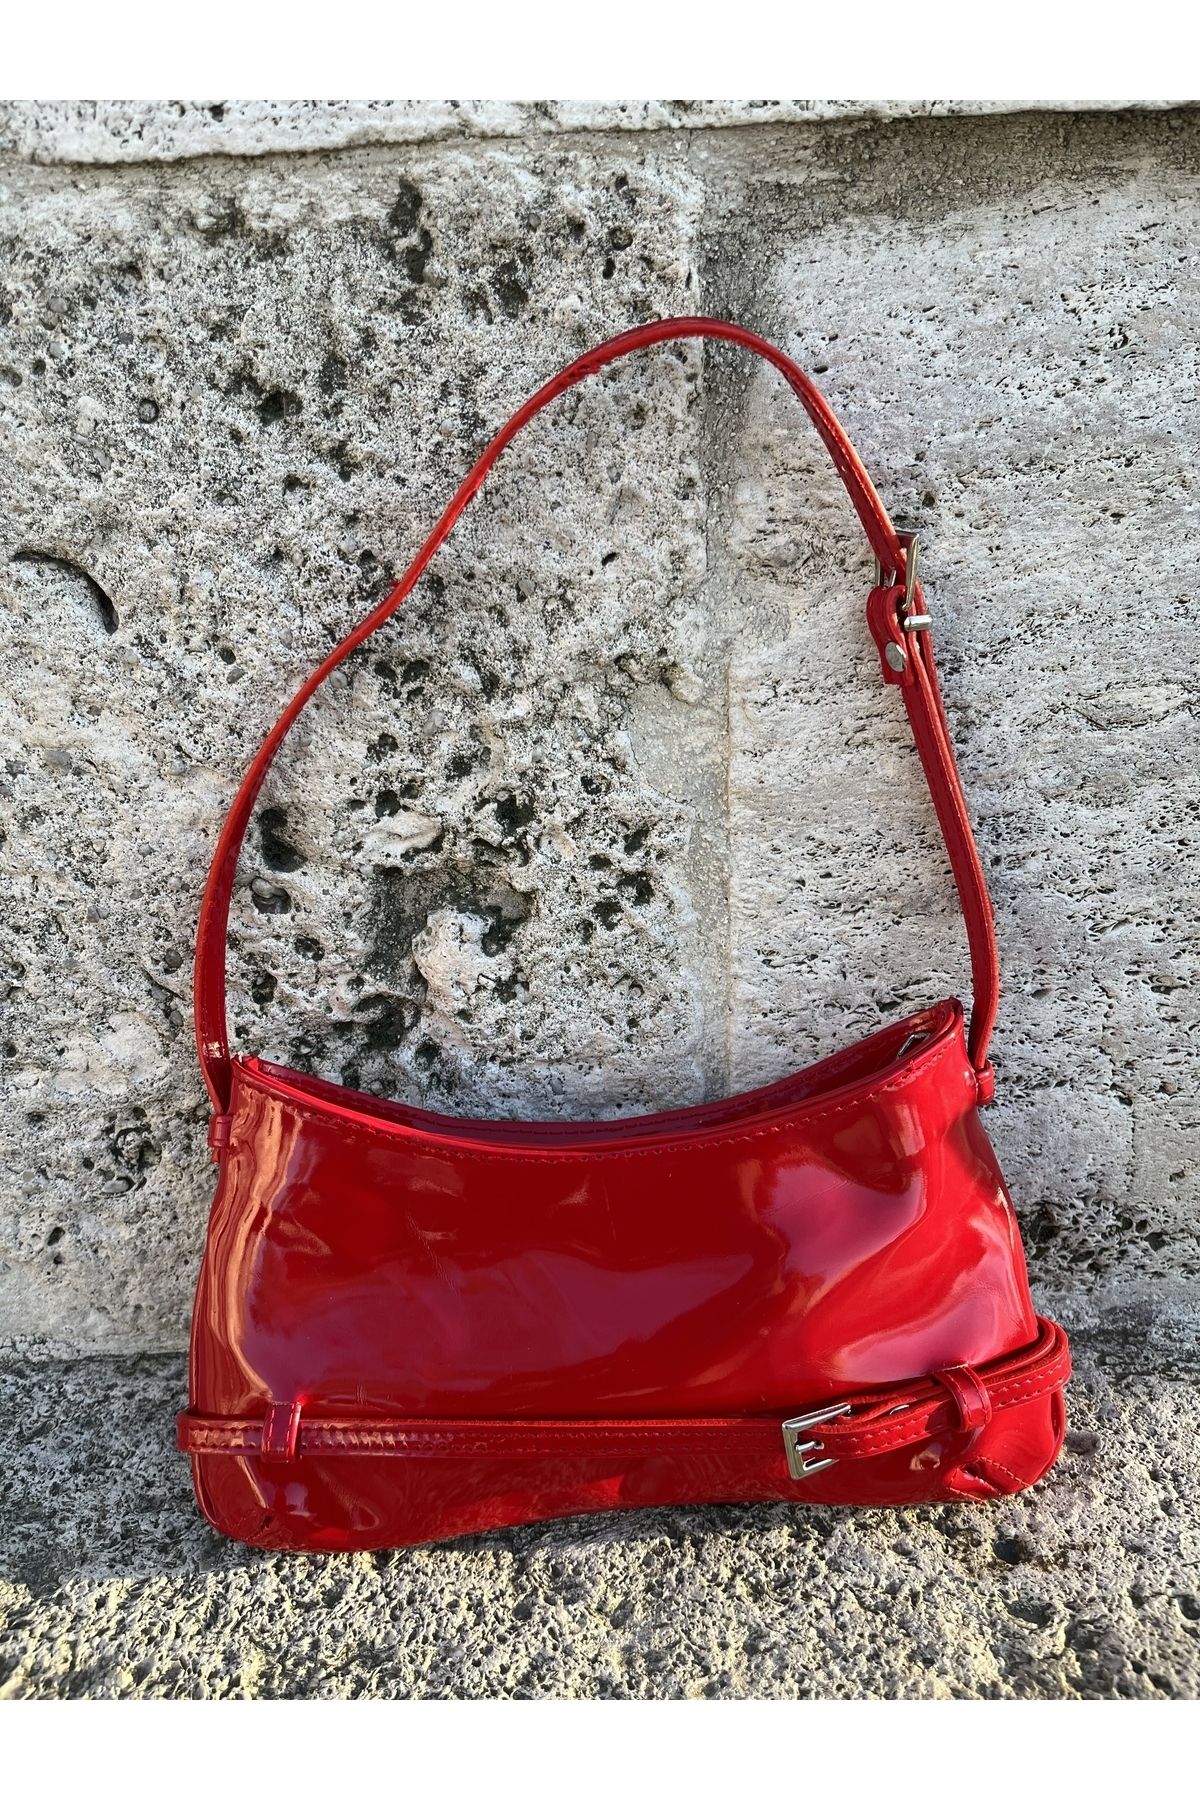 Grandcollection Kırmızı Renk Pinterest Rugan Parlak Kumaş Kadın Baget Omuz Çanta